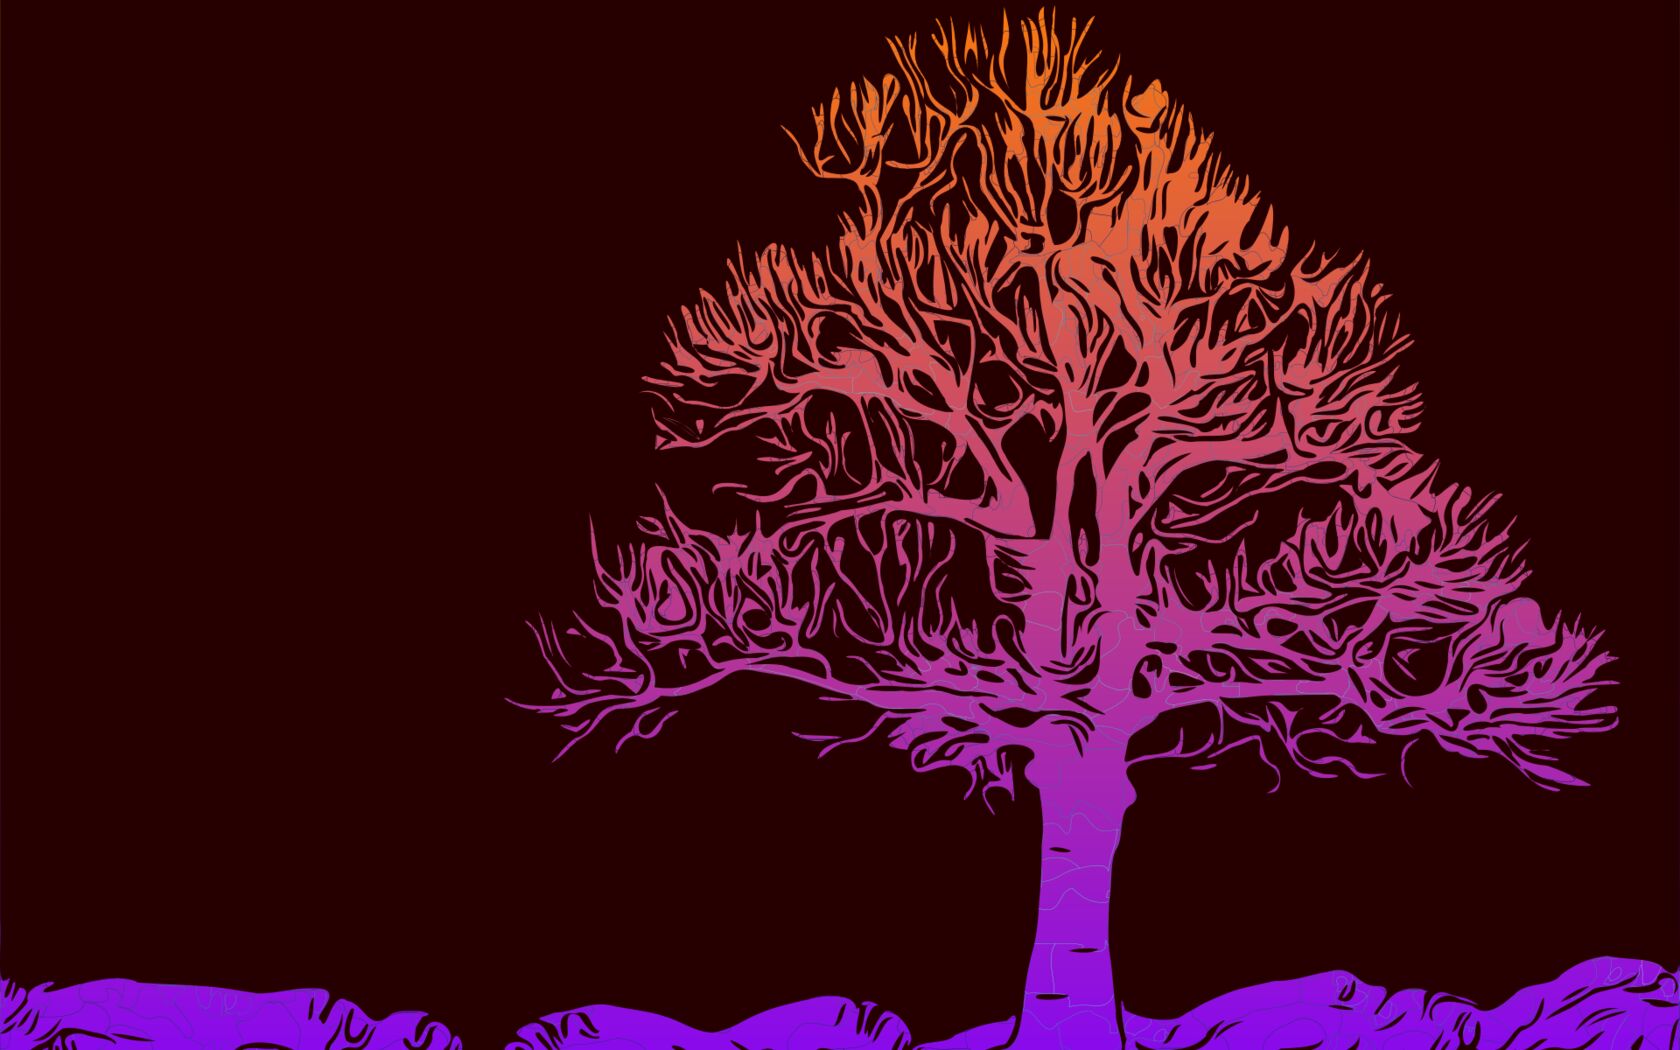 多彩抽象大<span style='color:red;'>树</span>唯美背景壁纸图片 如彩虹般的紫色，粉红色